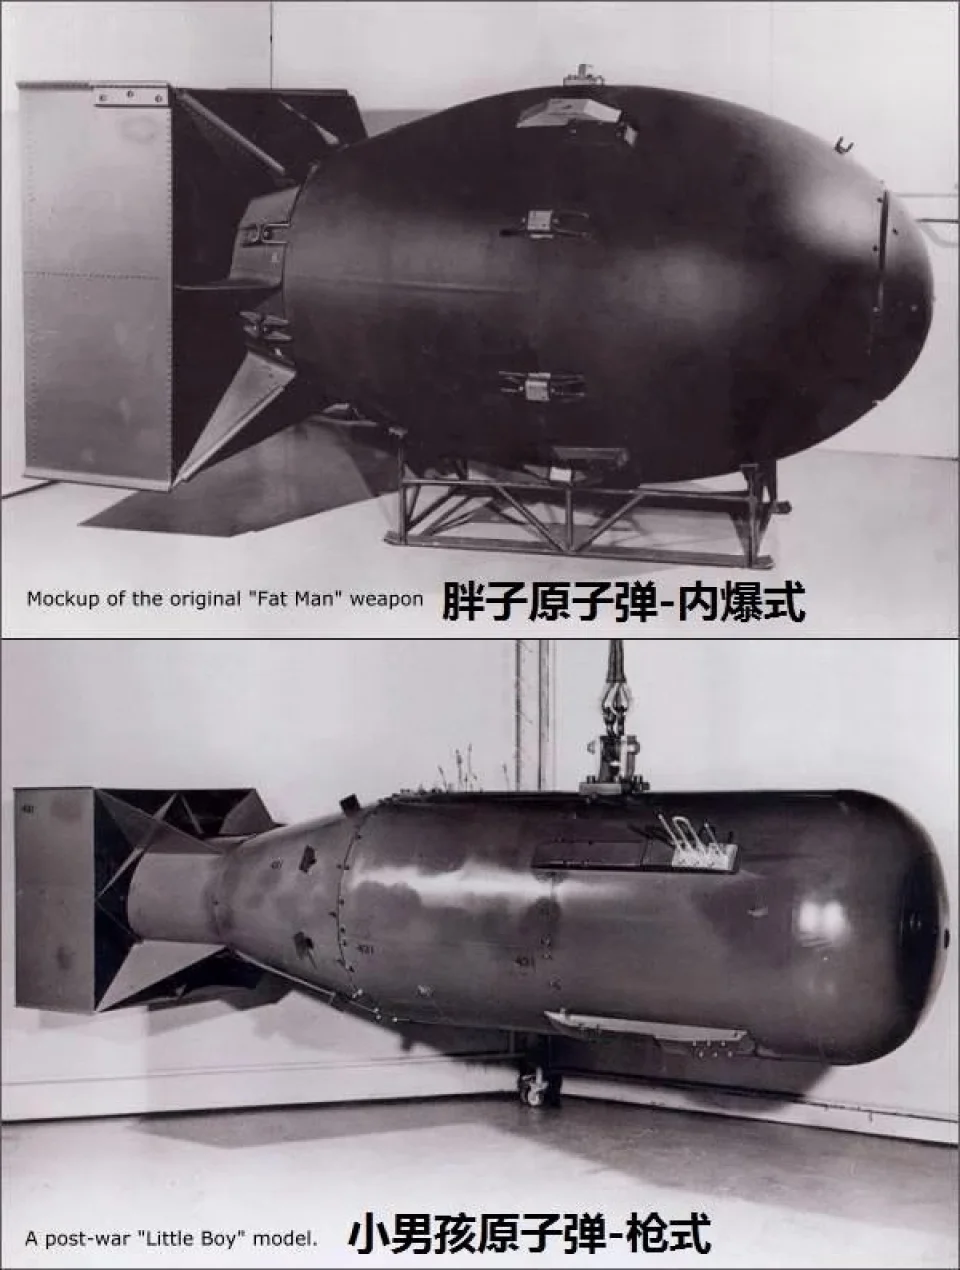 《三体》中为什么核弹外层炸药爆炸核弹却没有发生核爆？